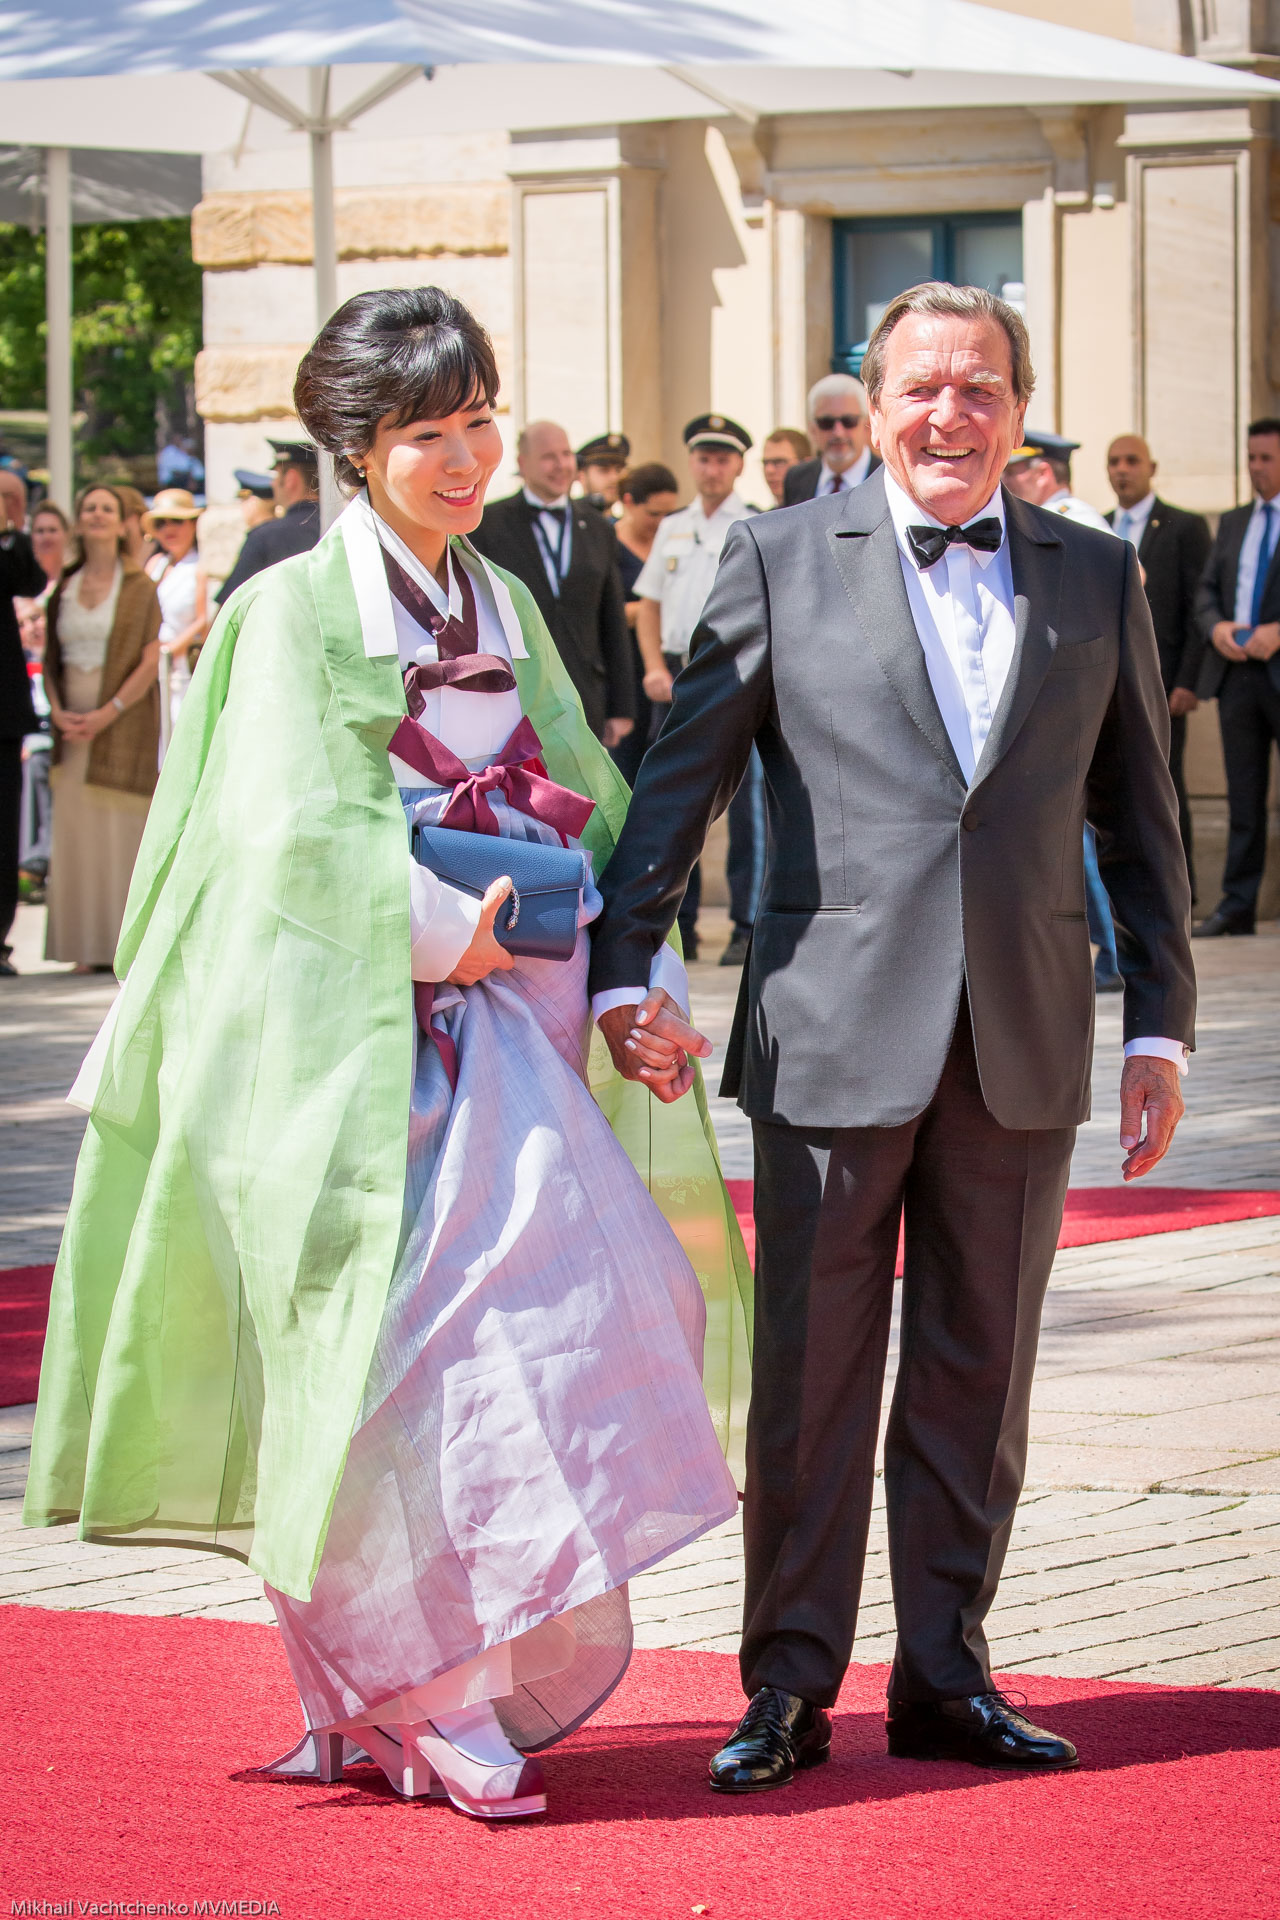 Секрет вечной молодости раскрыт! Экс-канцлер ФРГ Герхард Шредер с молодой супругой Со Ен Ким в традиционном наряде.